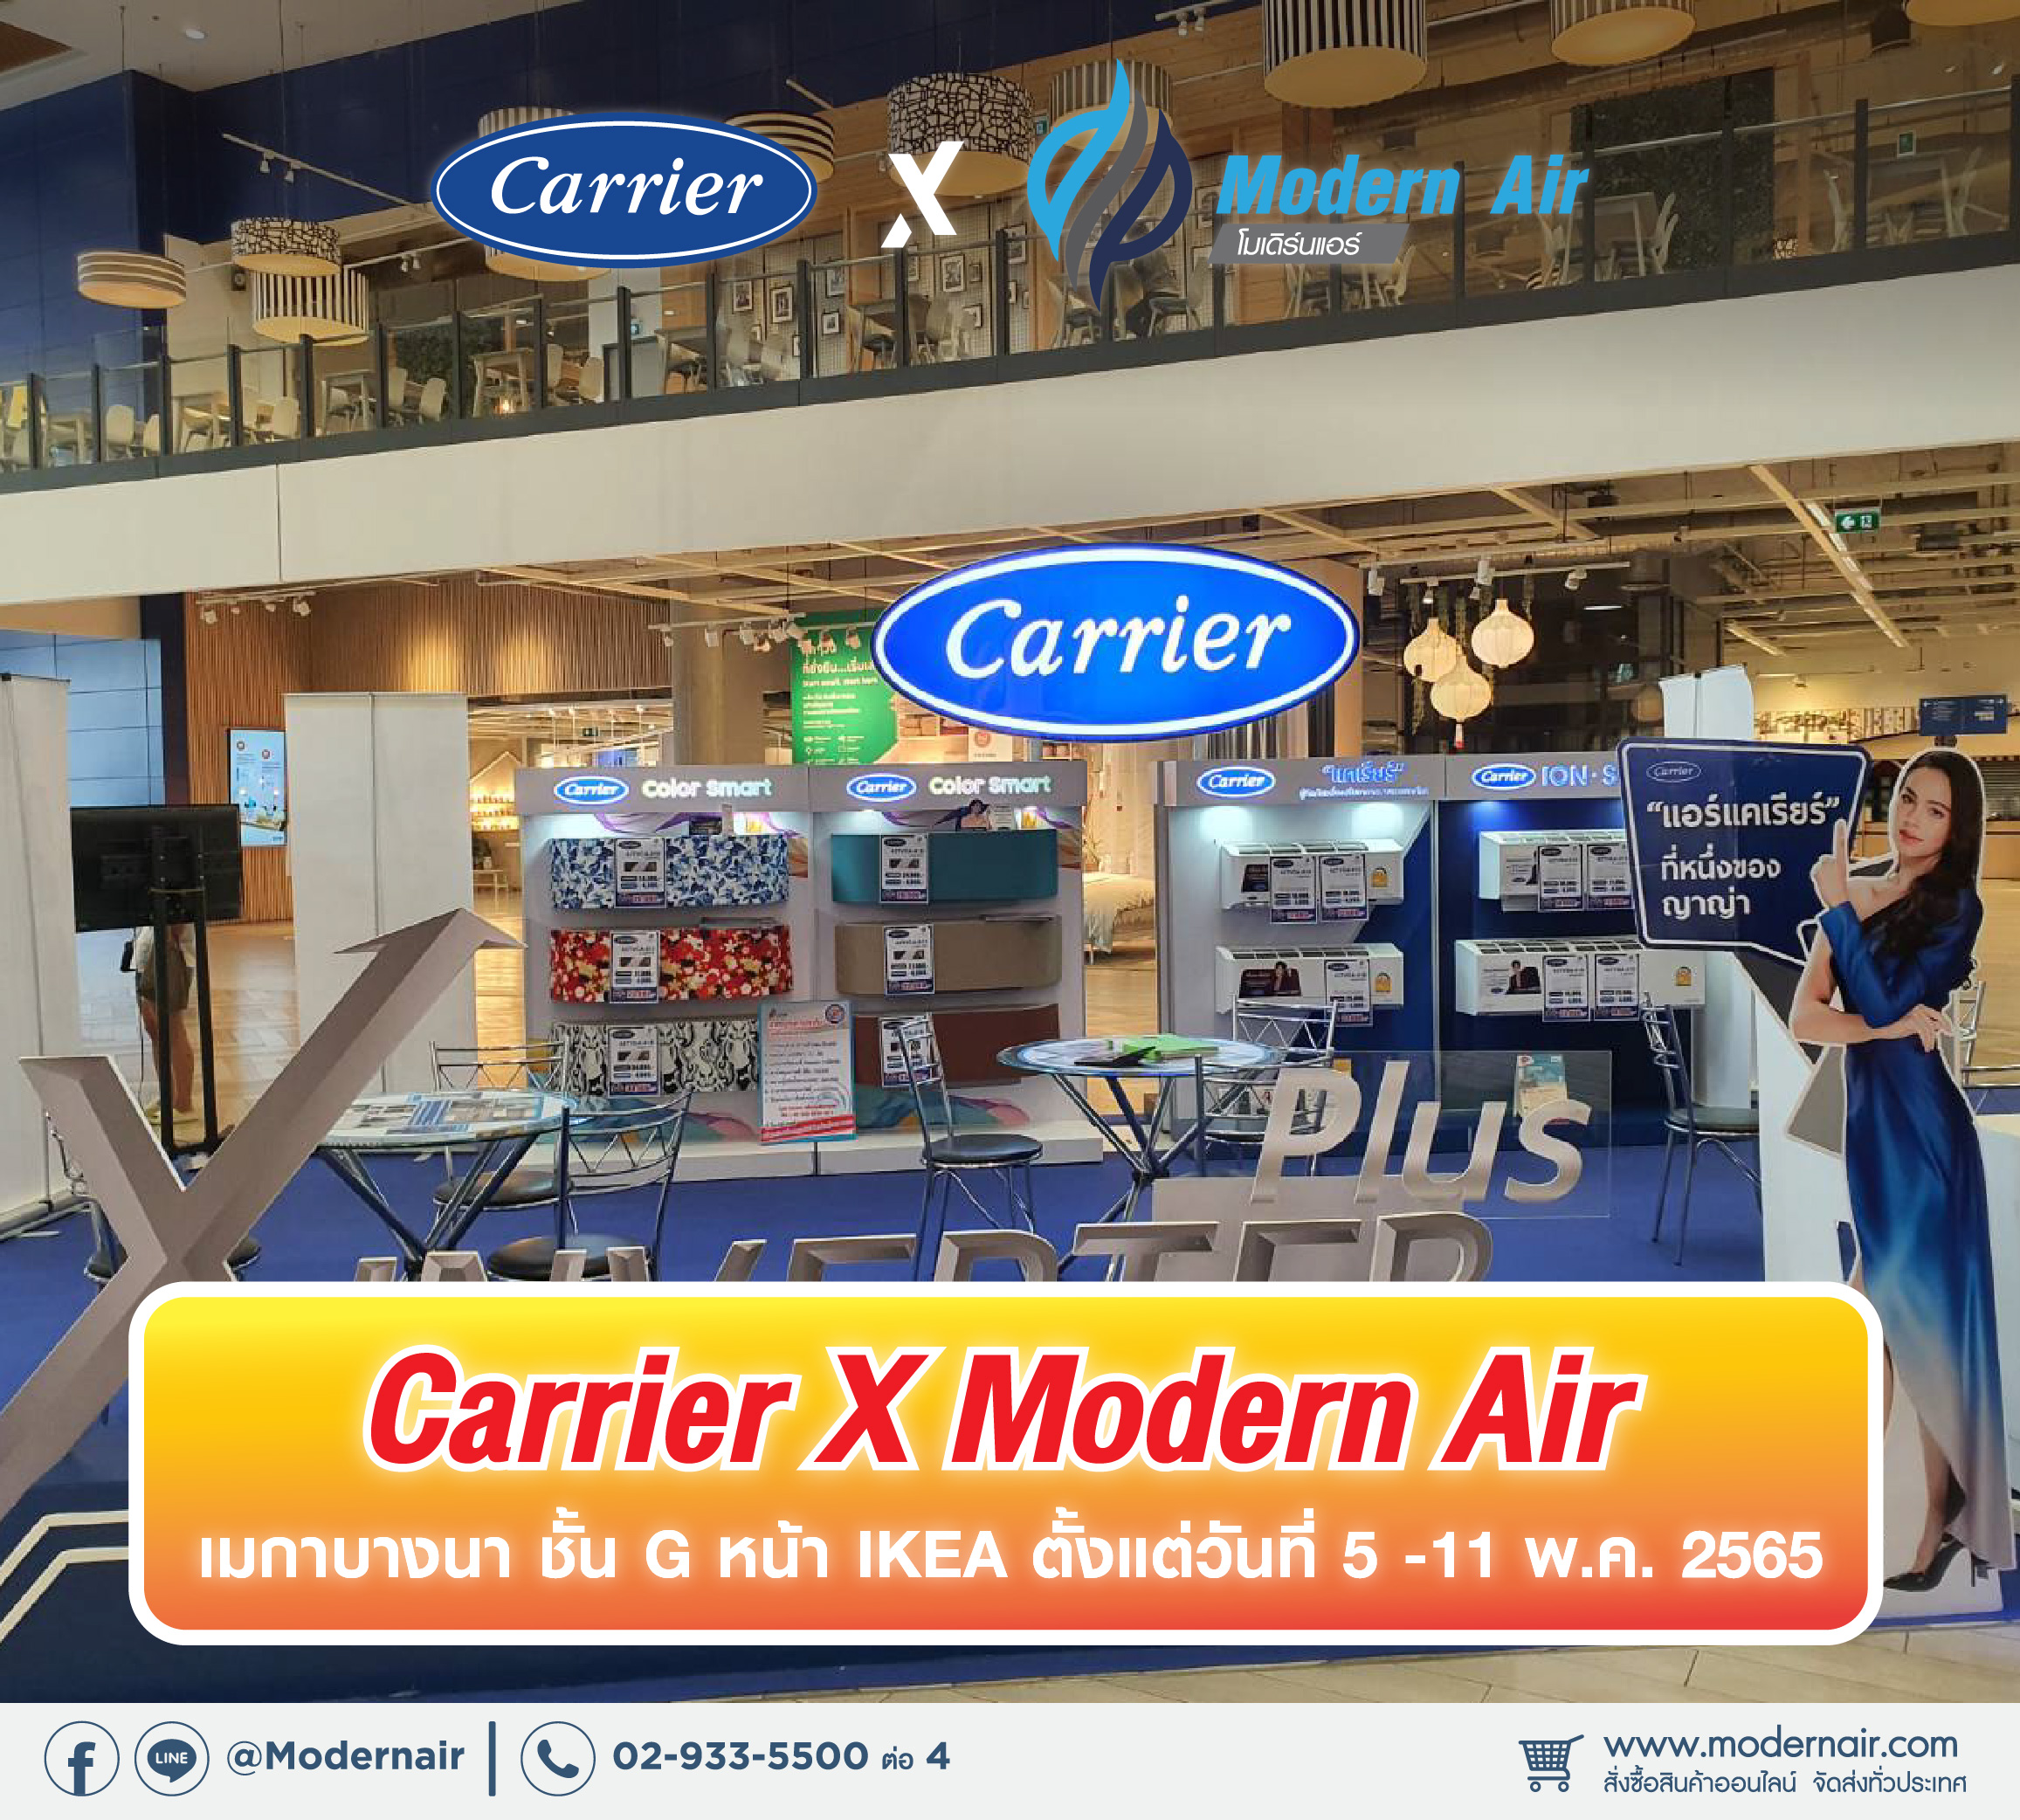 Carrier X Modern Air @ MEGABANGNA 